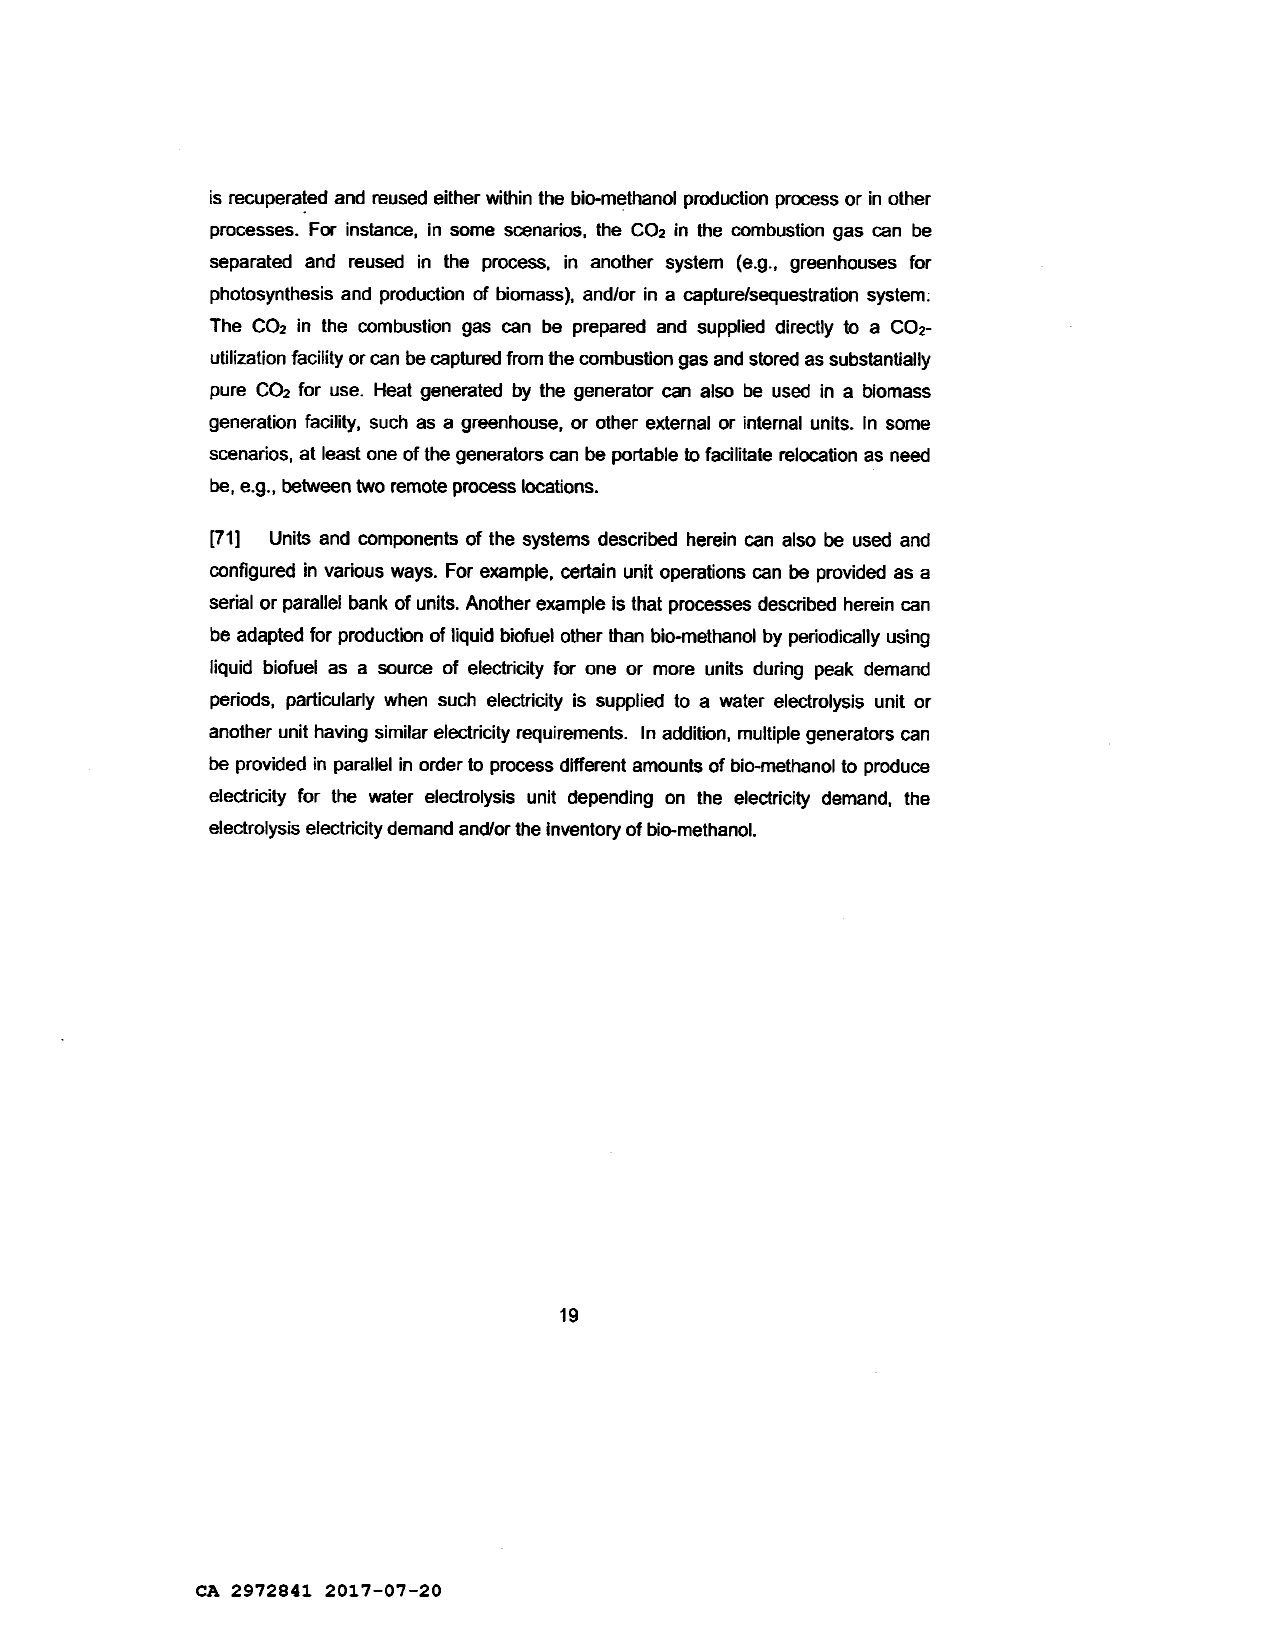 Canadian Patent Document 2972841. Description 20170721. Image 19 of 19